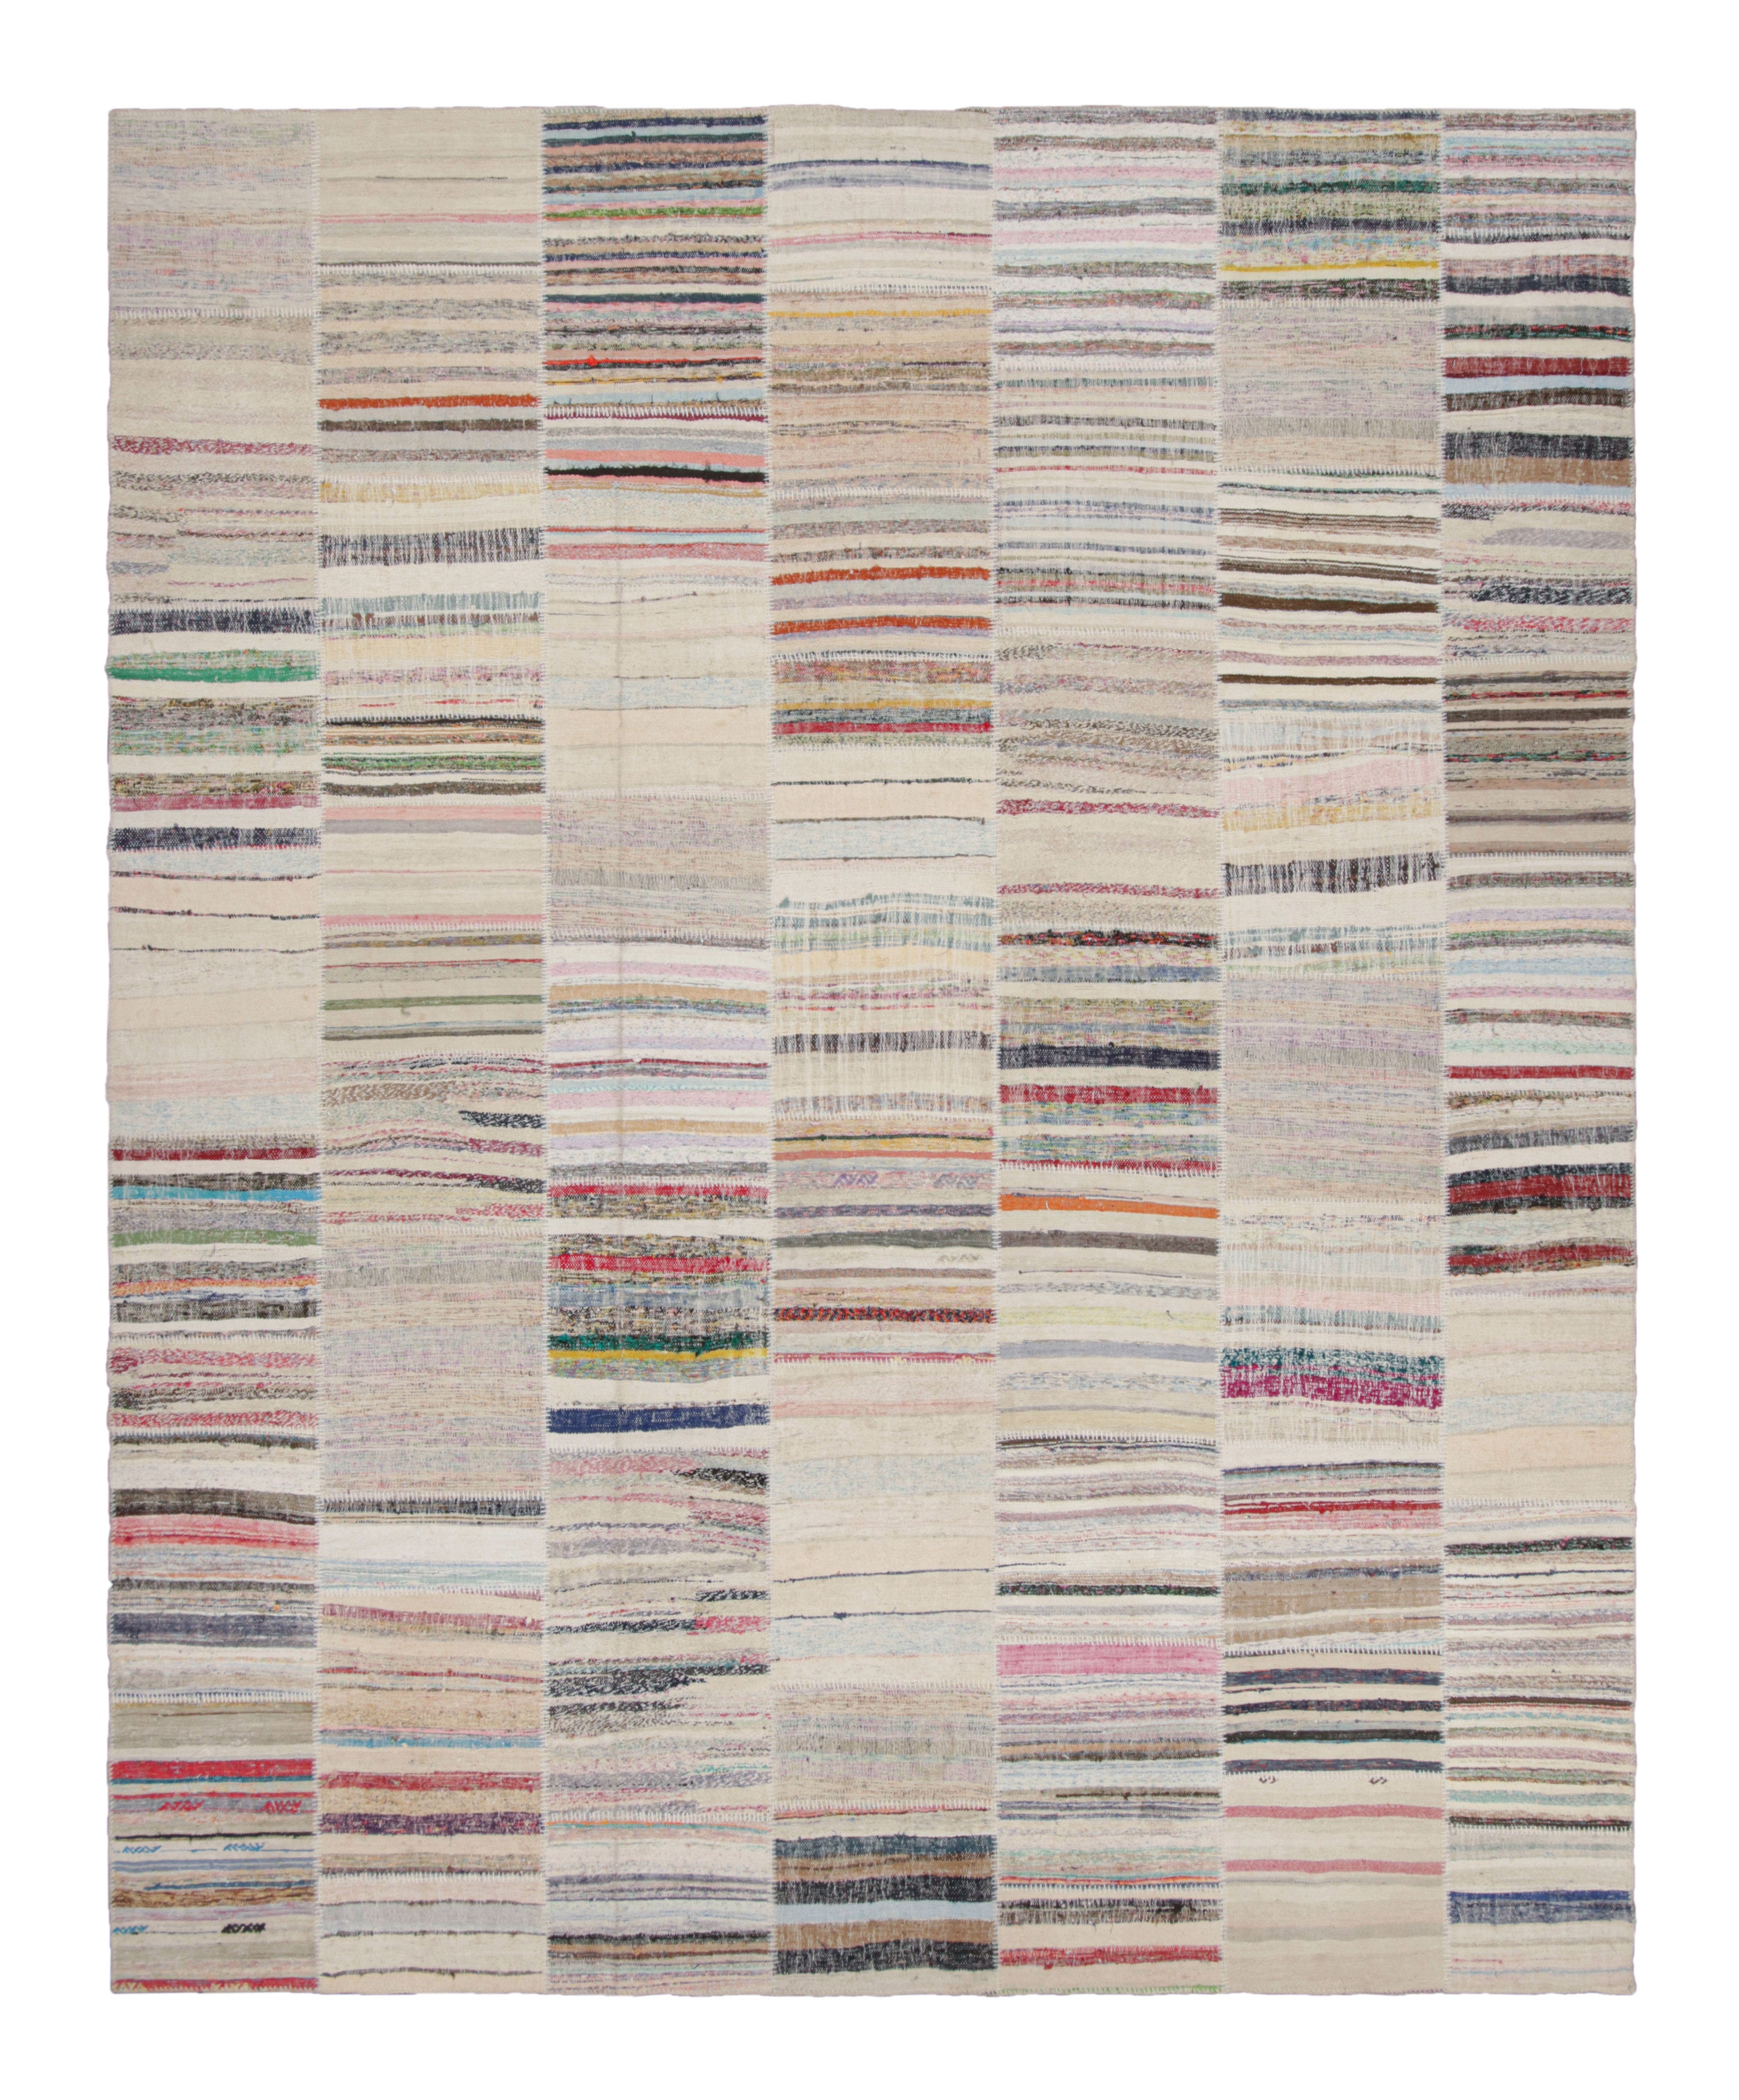 Rug & Kilim's Modern Patchwork Kilim Rug in Gray Multi-Color Stripe Pattern